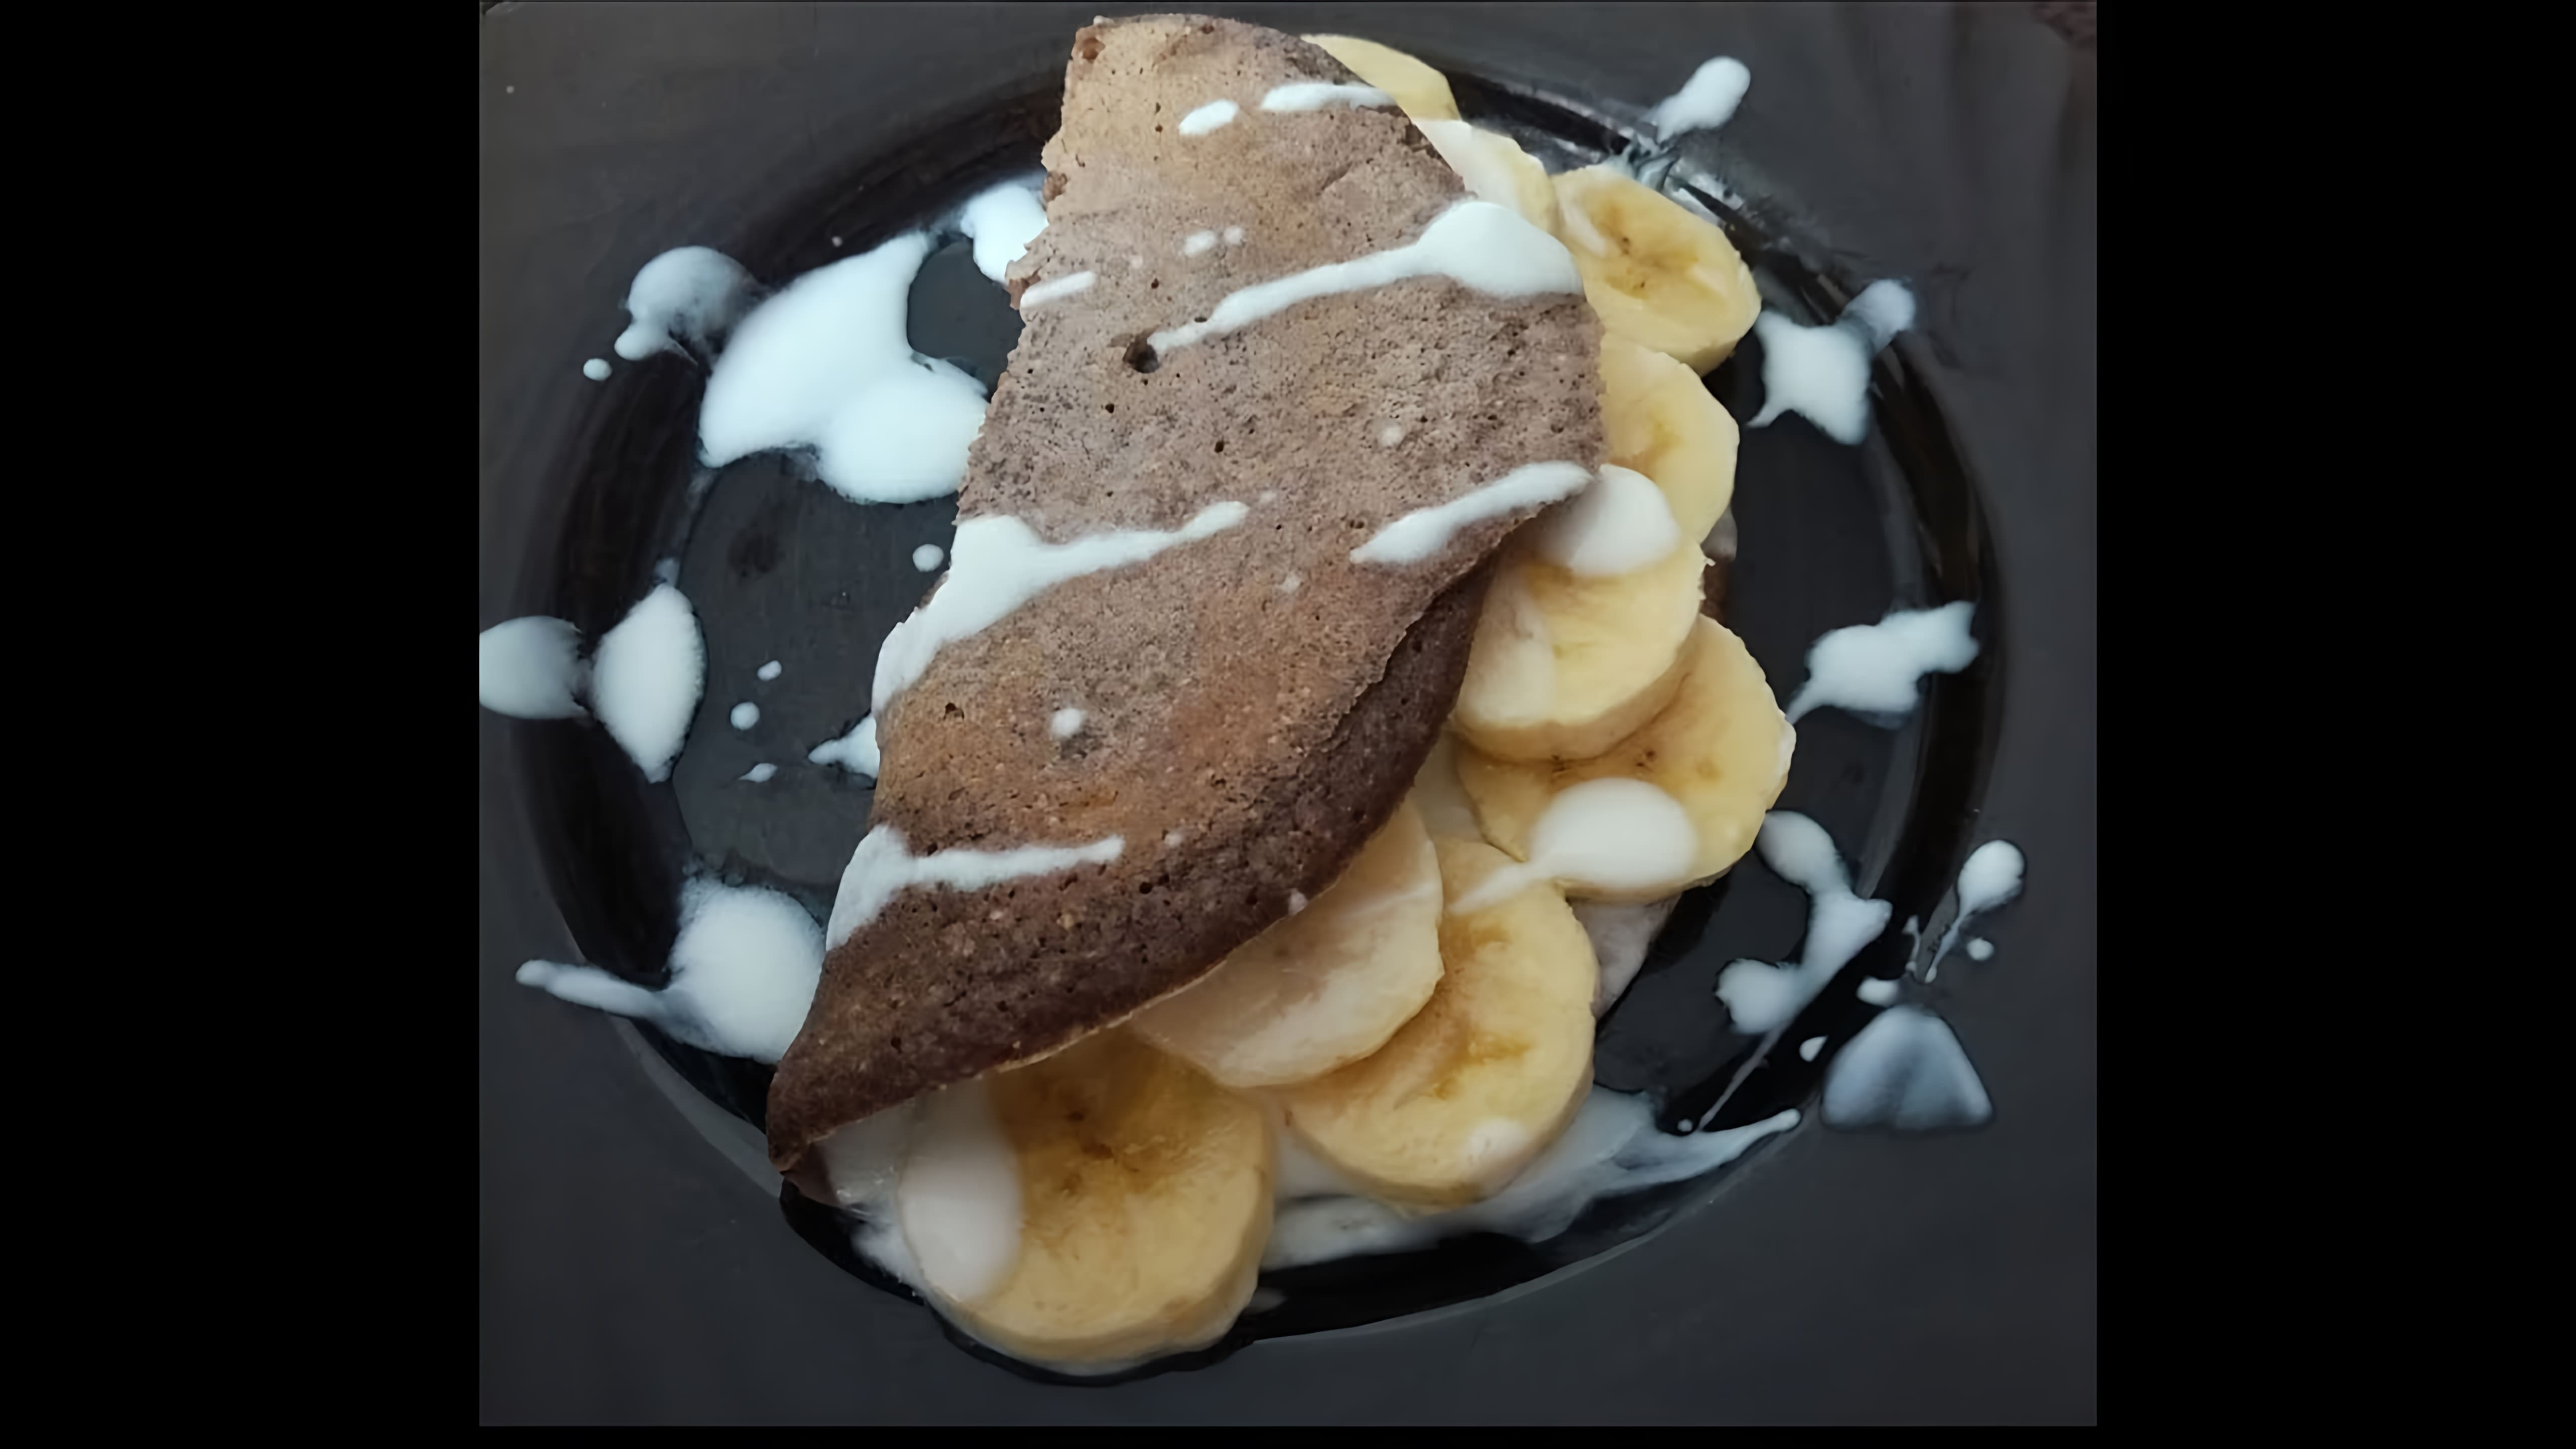 В этом видео демонстрируется рецепт шоколадного овсяноблина с бананом, который является полезным и питательным завтраком